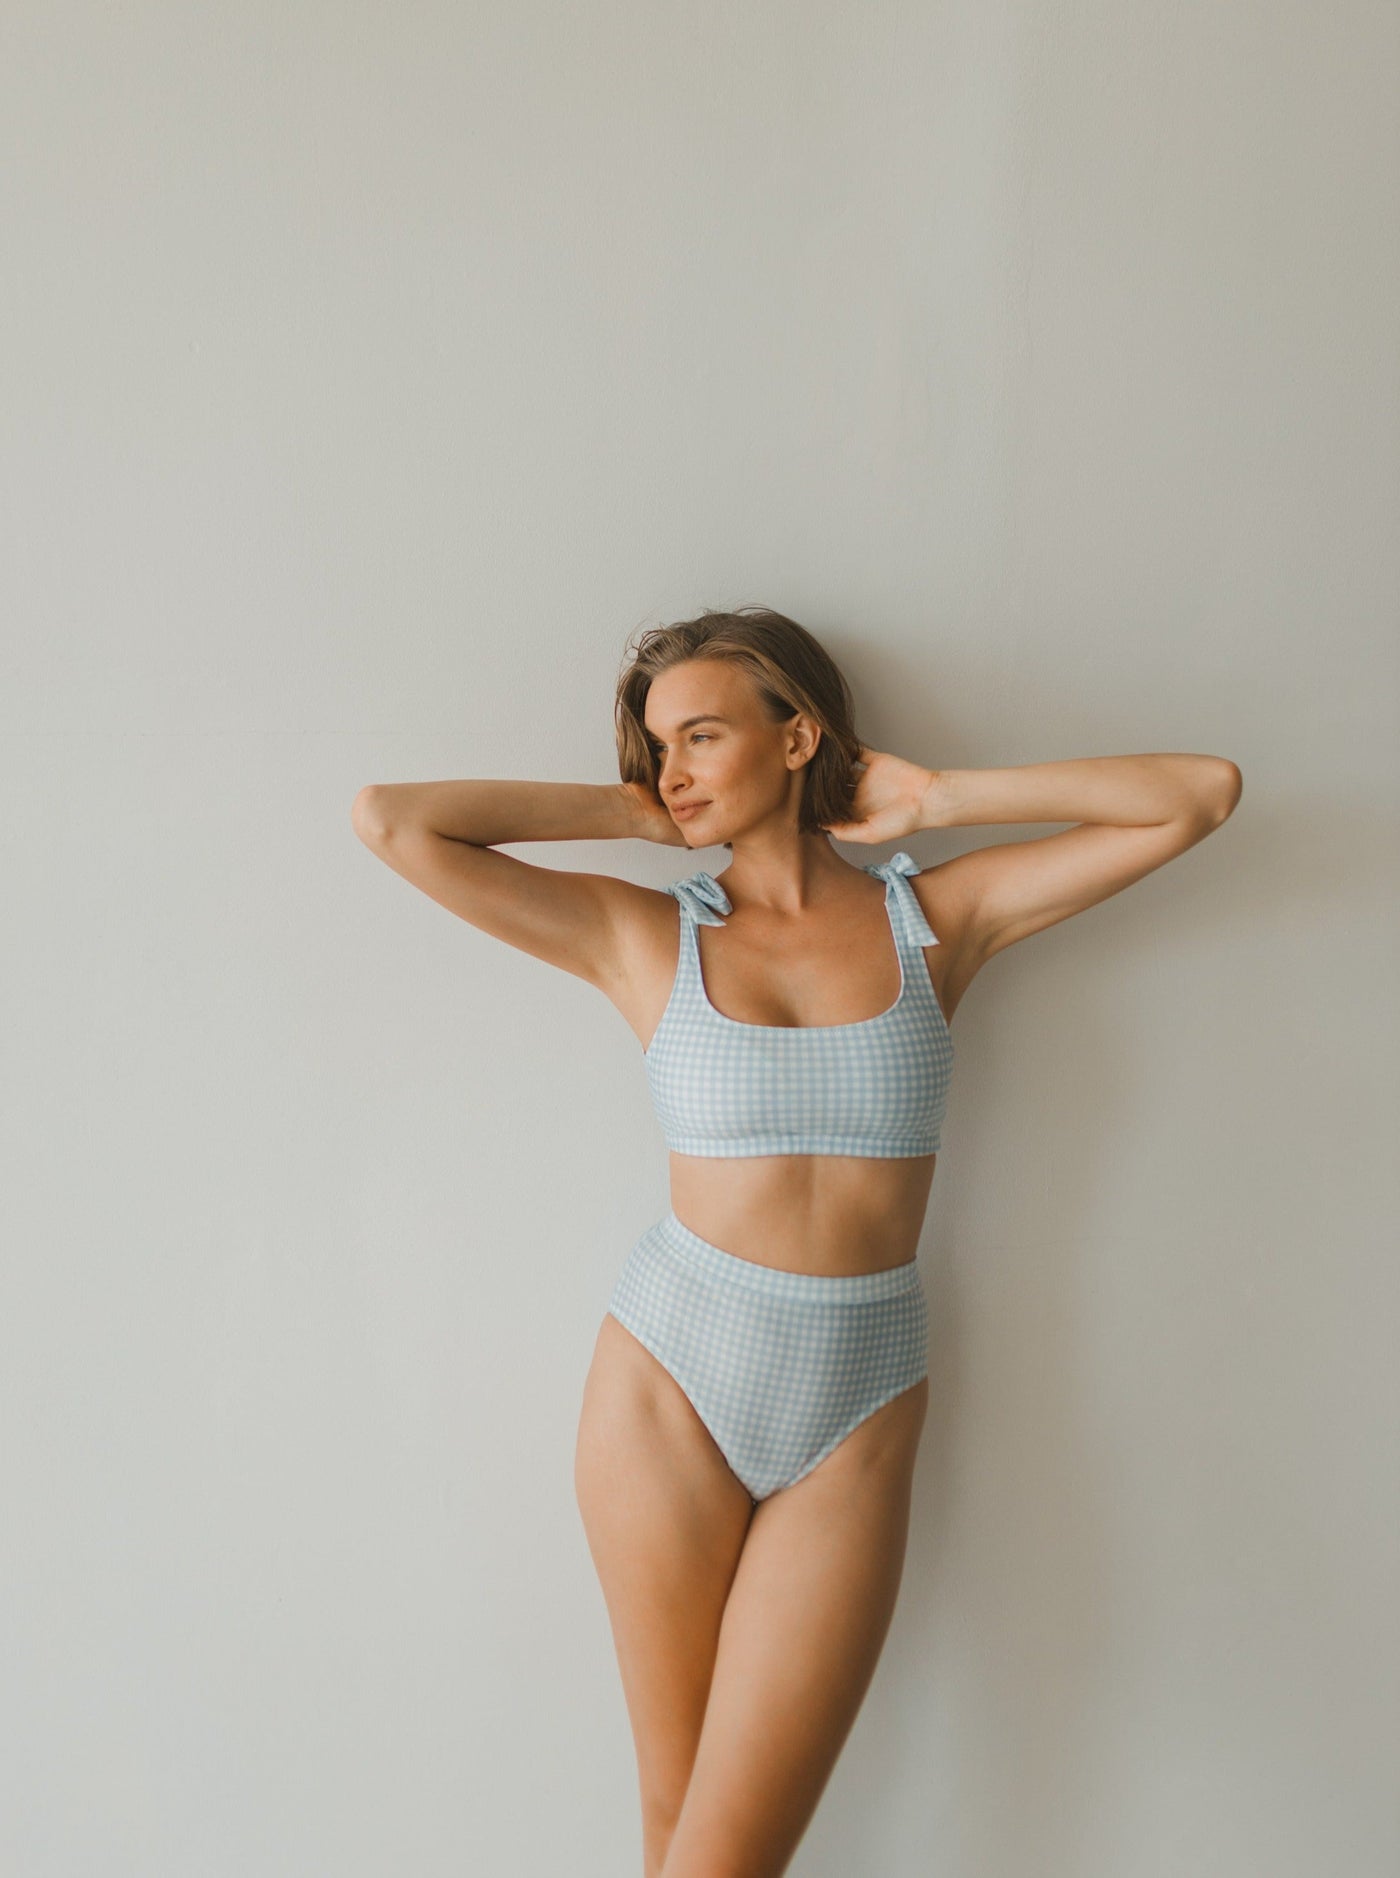 Woman two piece bikini swimwear in blue gingham prints